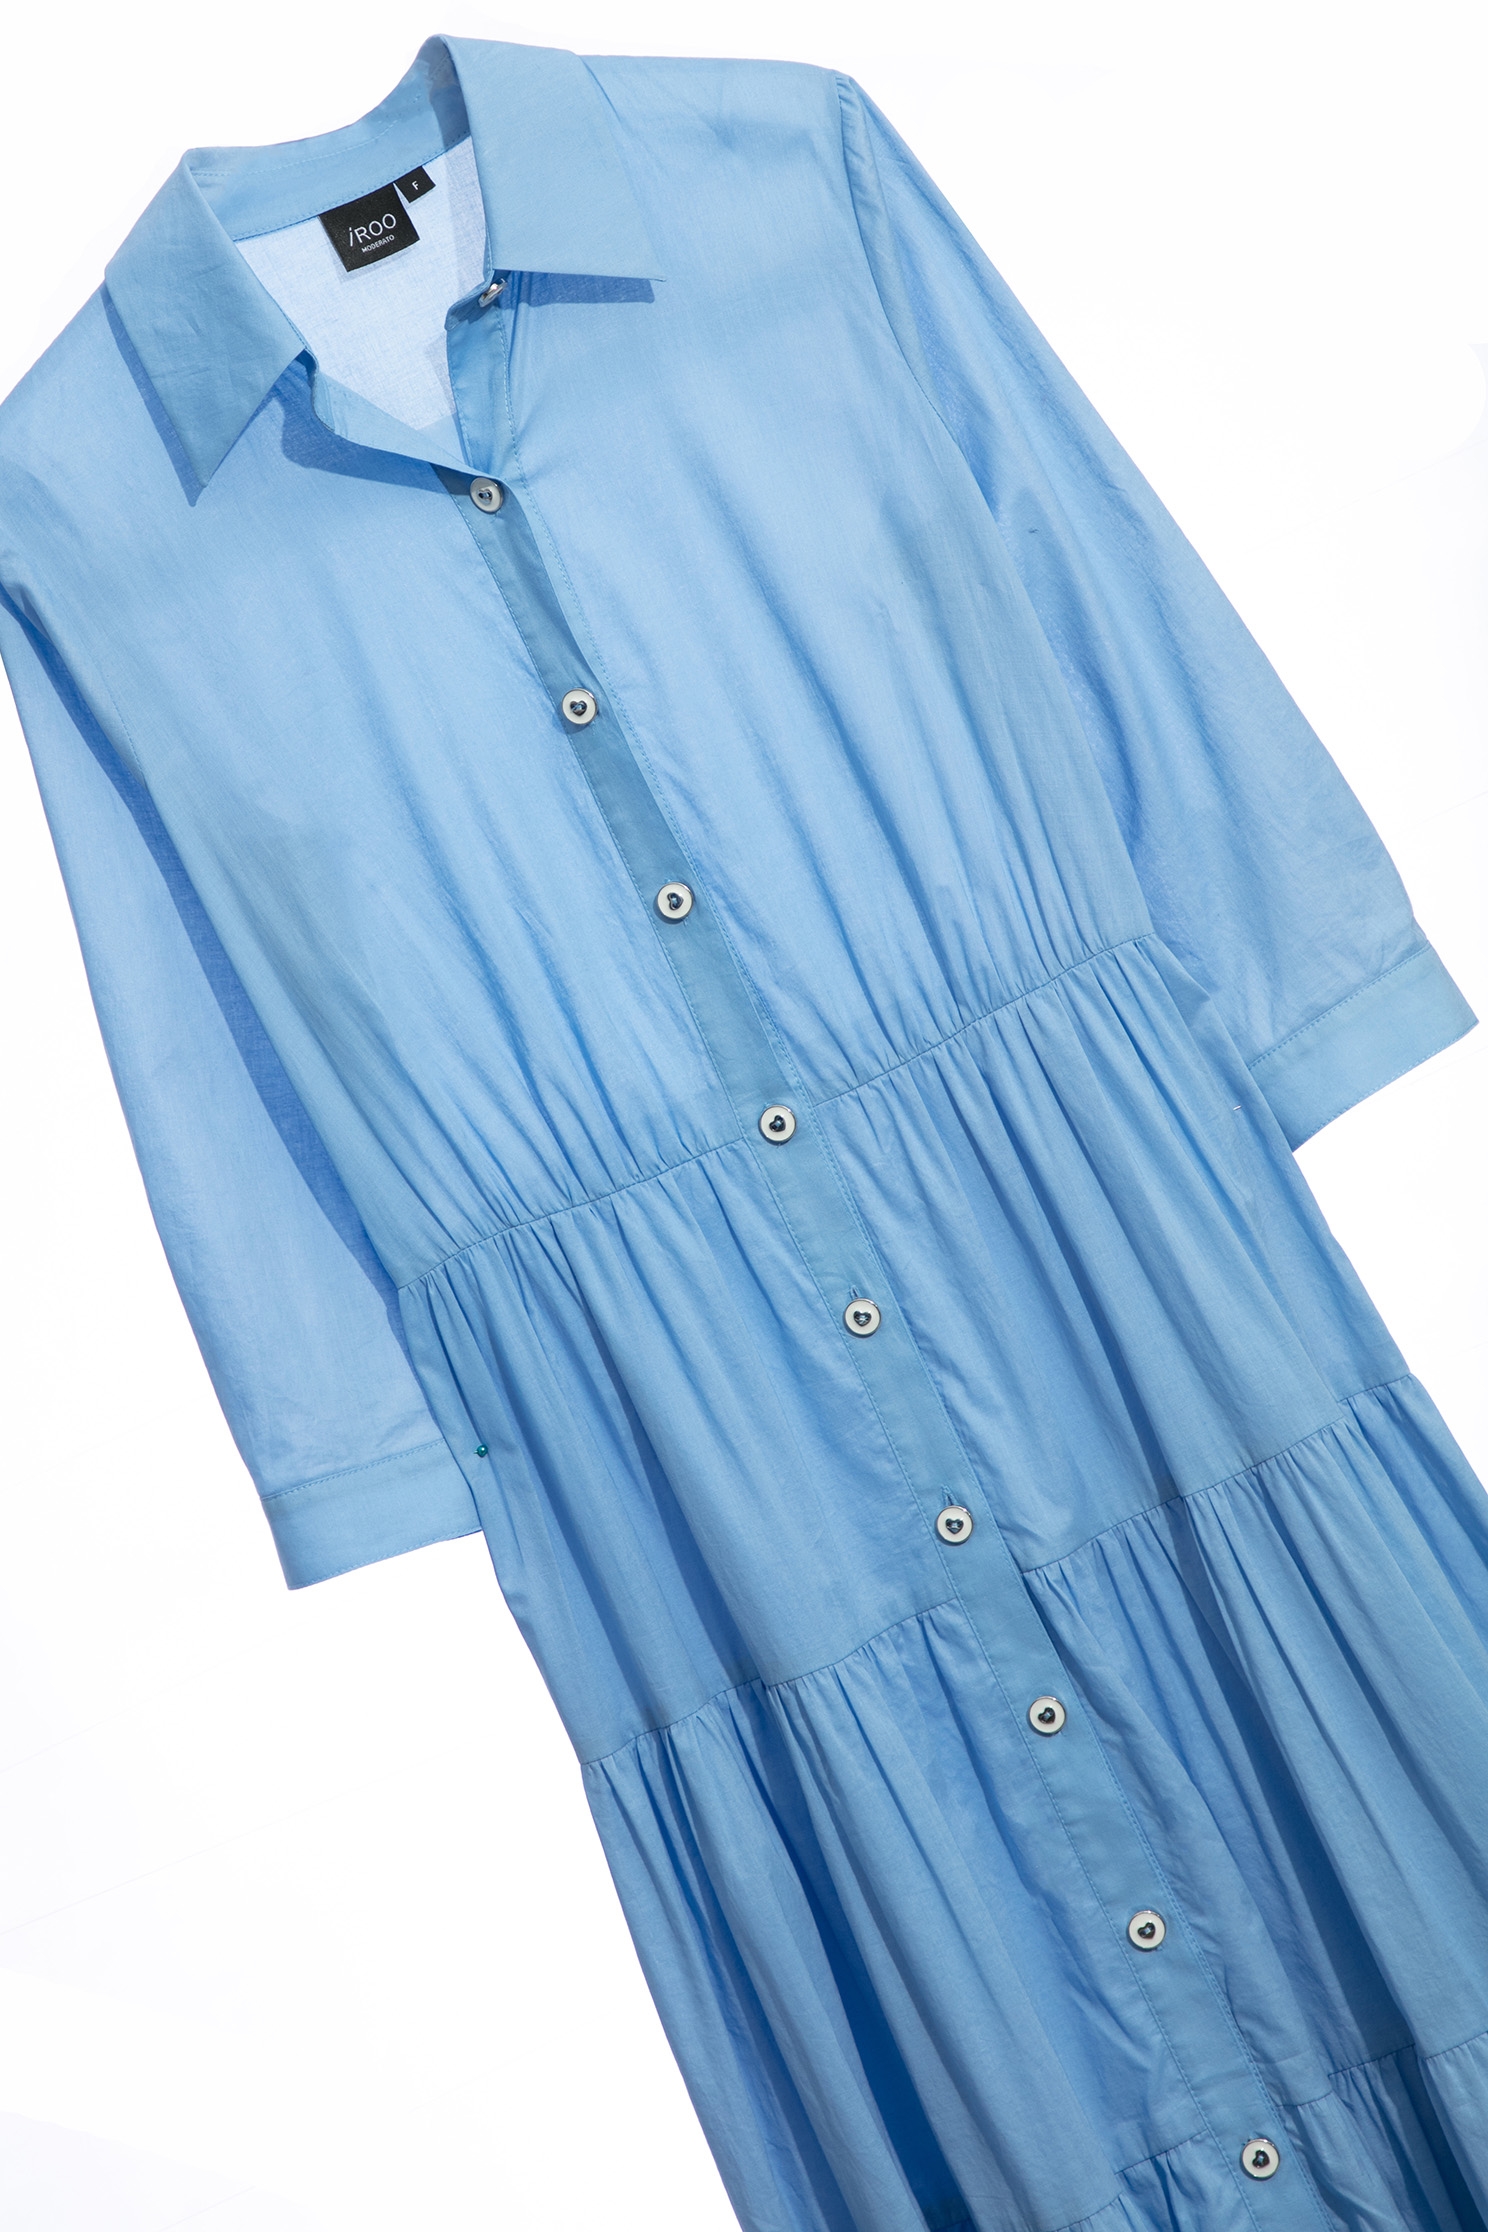 寧靜藍襯衫式長洋裝寧靜藍襯衫式長洋裝,一般洋裝,人氣商品,春夏穿搭,襯衫,輕奢度假,輕奢渡假,長洋裝